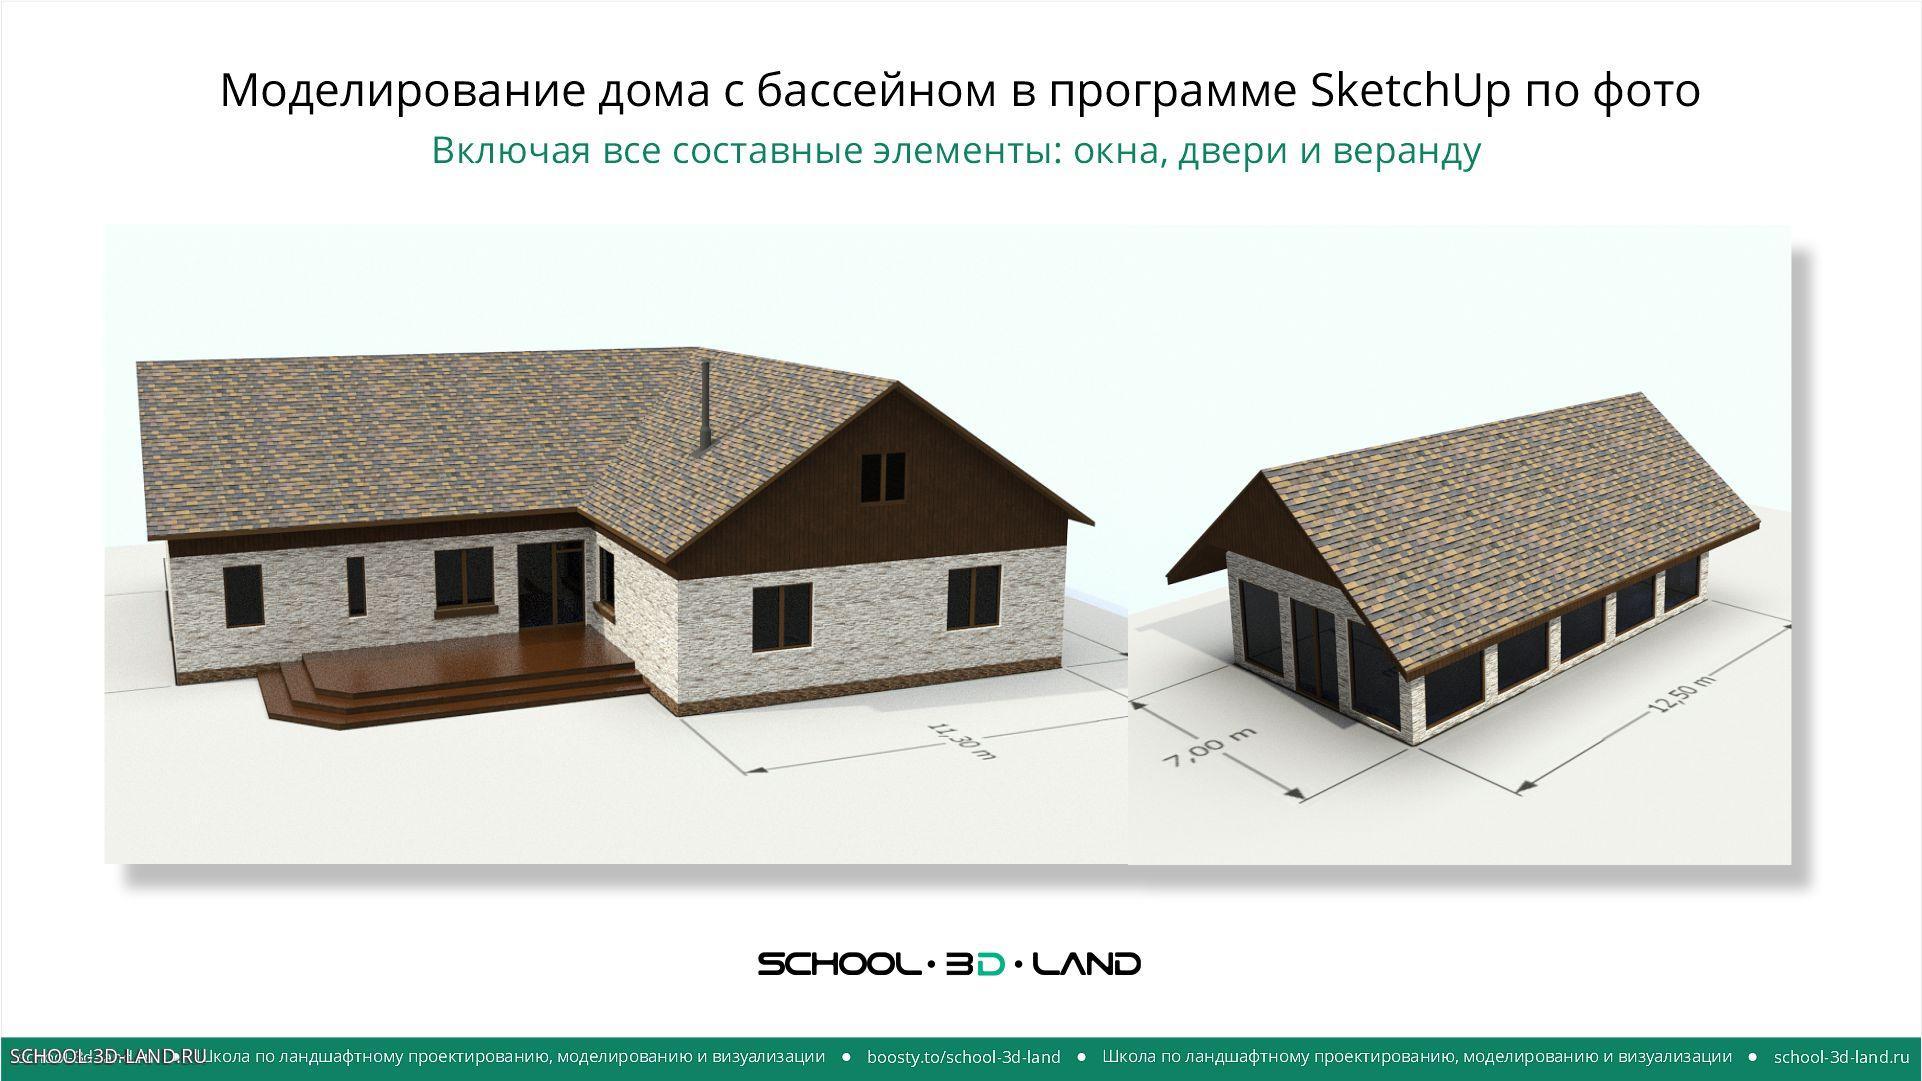 Моделирование дома с бассейном по фото в программе SketchUp. Части 1-2-3